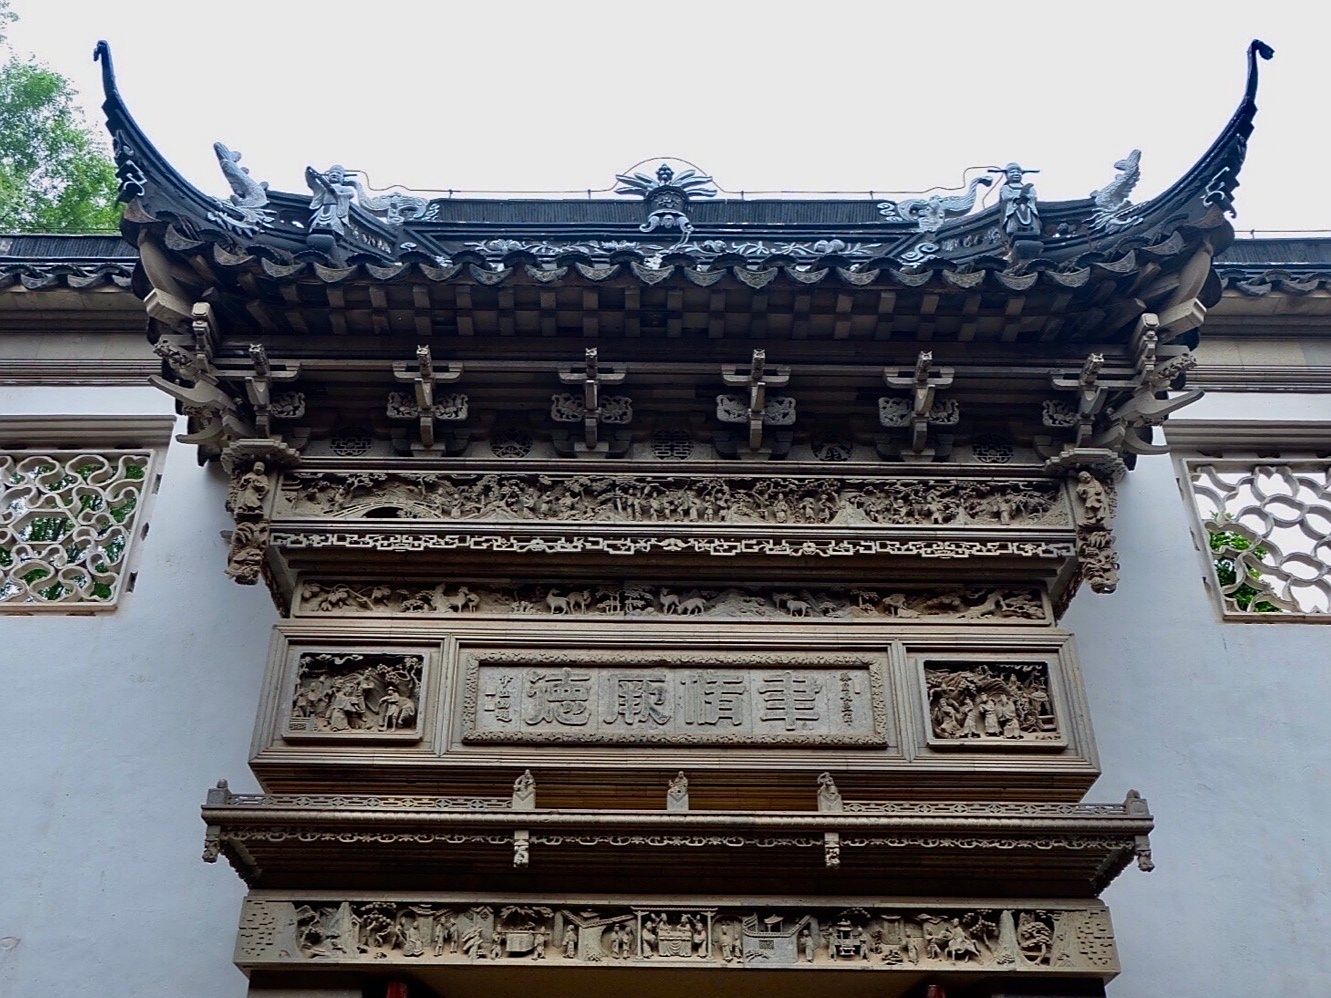 东山雕花楼,是吴中香山建筑雕刻的代表作